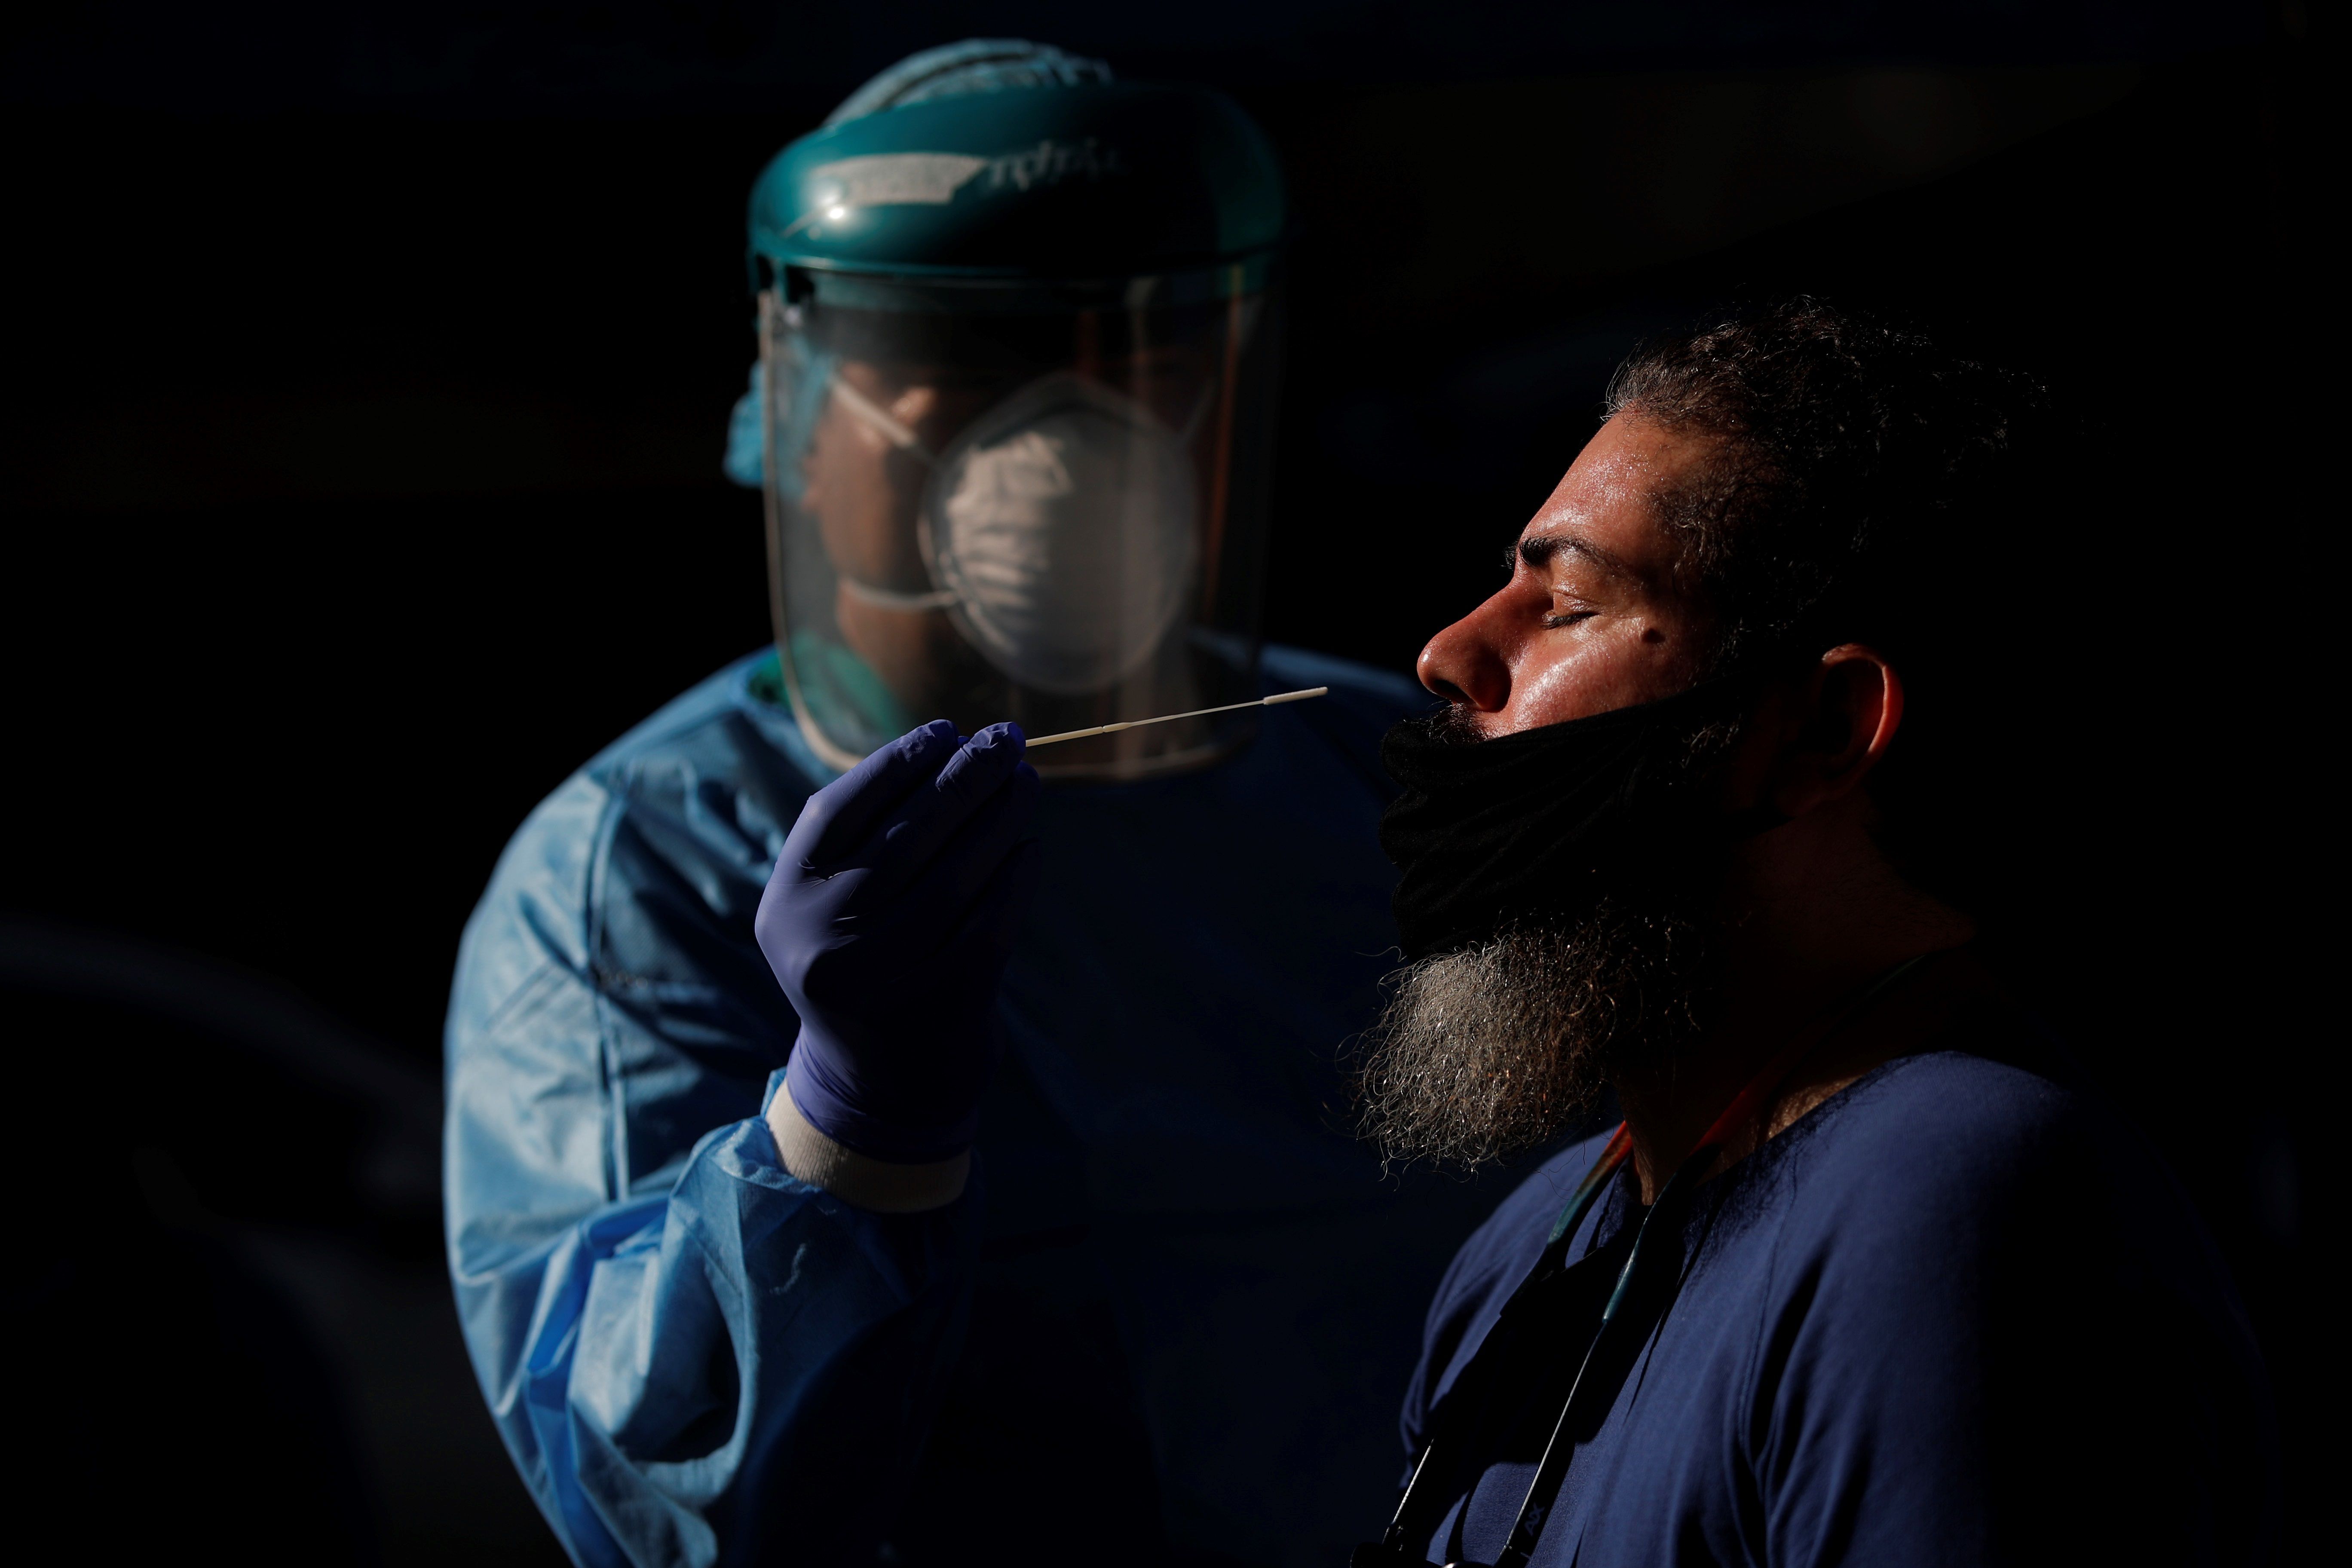 Un hombre se realiza una prueba de hisopado para detectar COVID-19 en un puesto express, el 8 de enero del 2021, en ciudad de Panamá (Panamá). EFE/Bienvenido Velasco/Archivo 